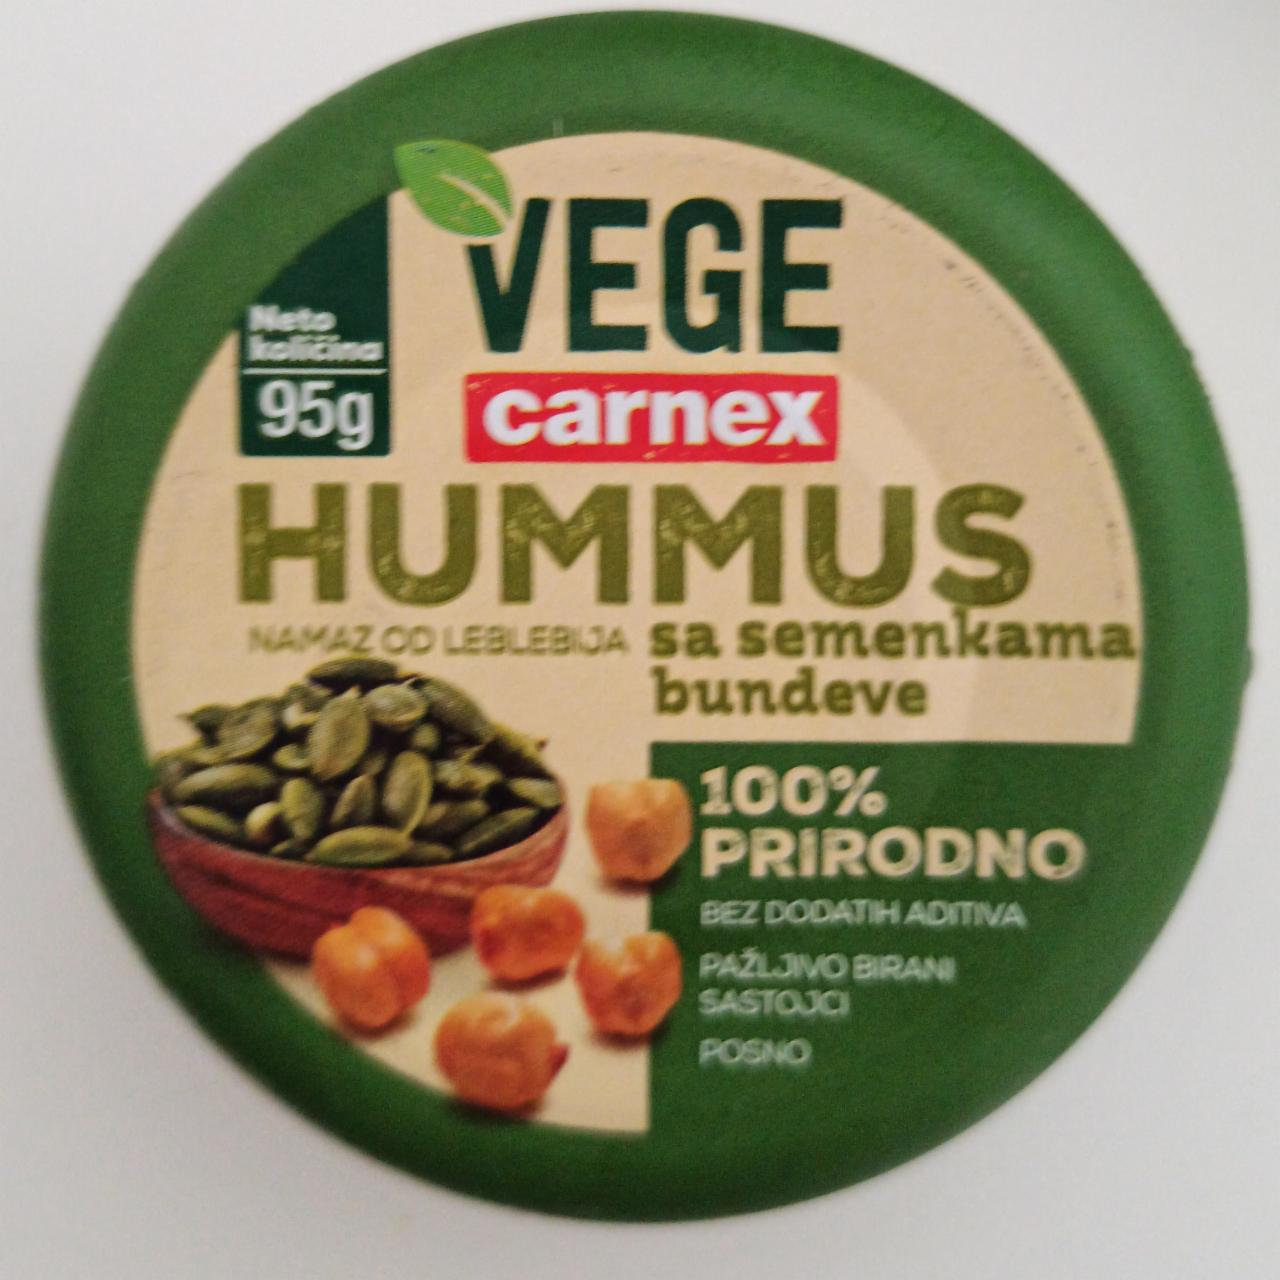 Фото - Хумус з гарбузовим насінням Hummus vege Carnex Карнекс